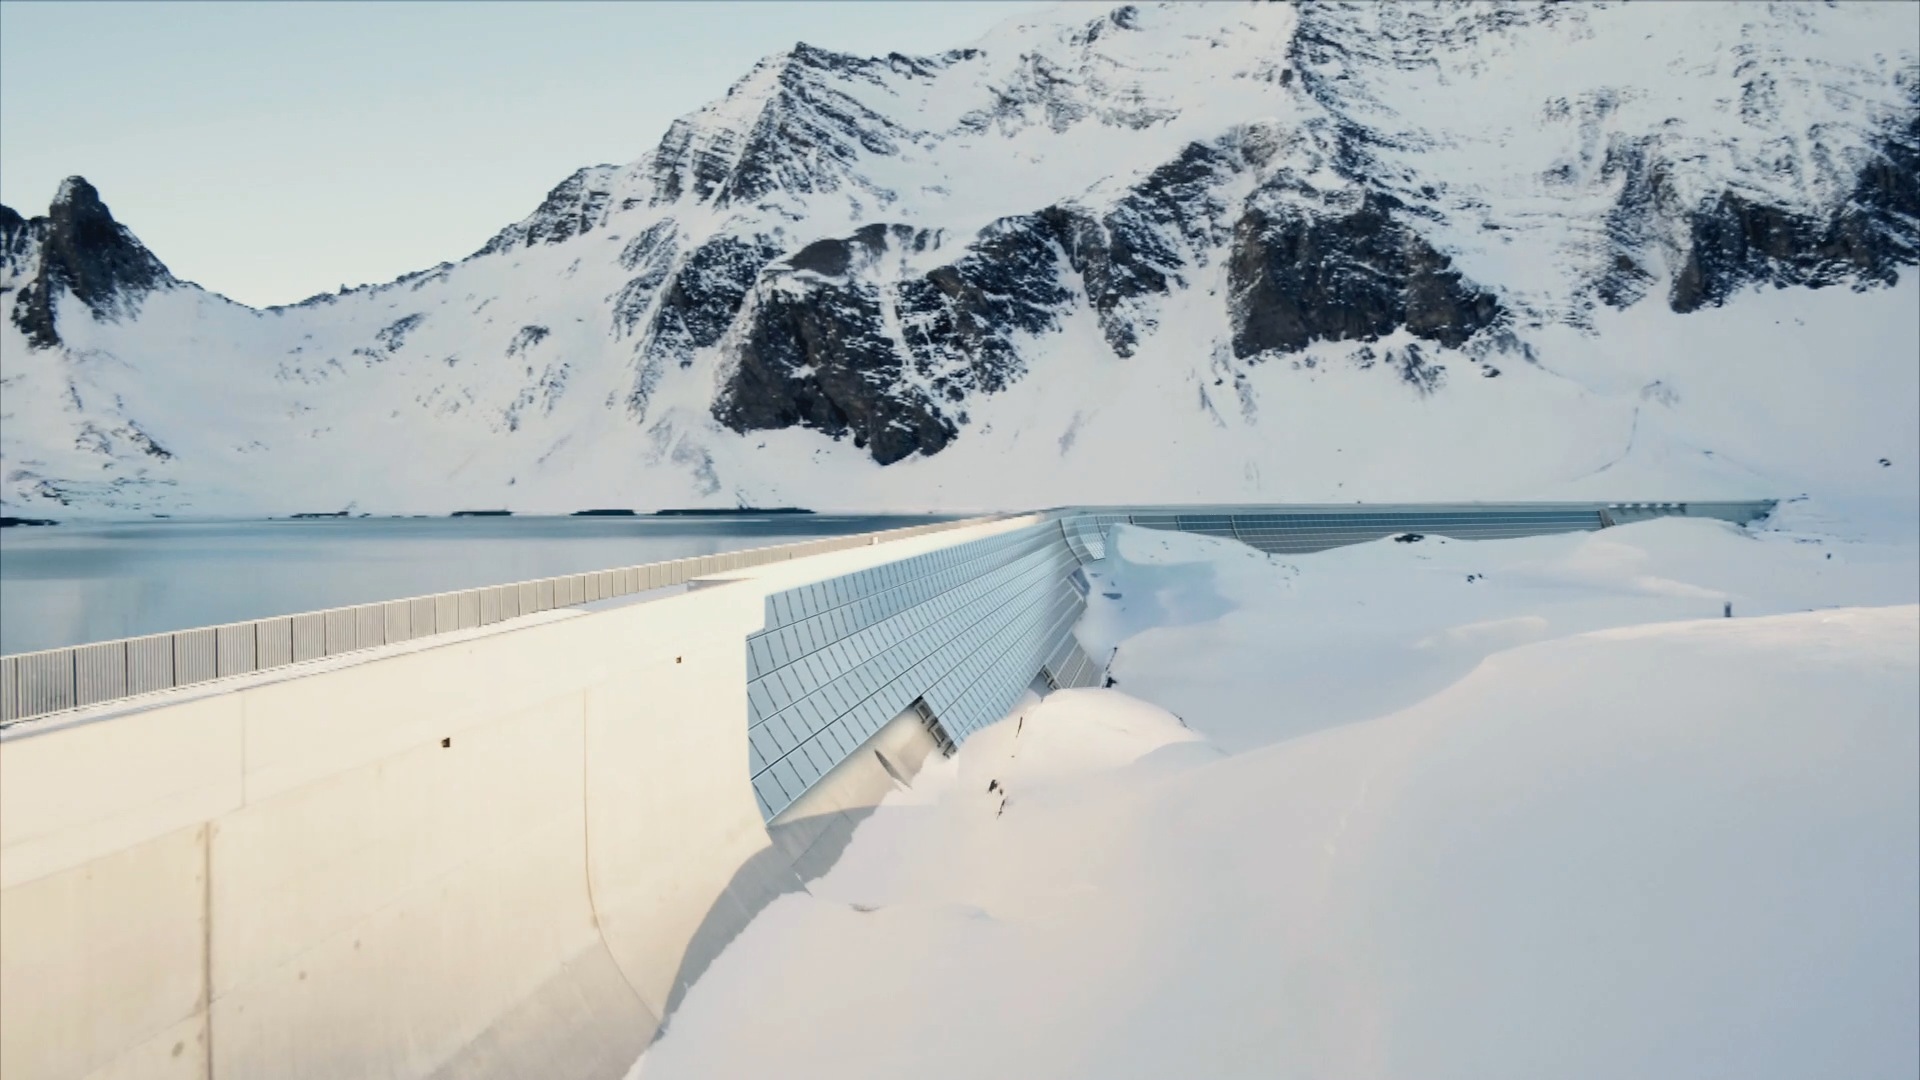 Solarstrom ist der Träger der Schweizer Energiezukunft. In den Alpen ist das Potenzial am grössten, um die befürchtete Stromlücke im Winter zu schliessen. Das mit einer Leistung von 2,2 Megawatt grösste alpine Solarkraftwerk an der Staumauer des Muttsees ist ein Anfang. (Bild: AXPO)